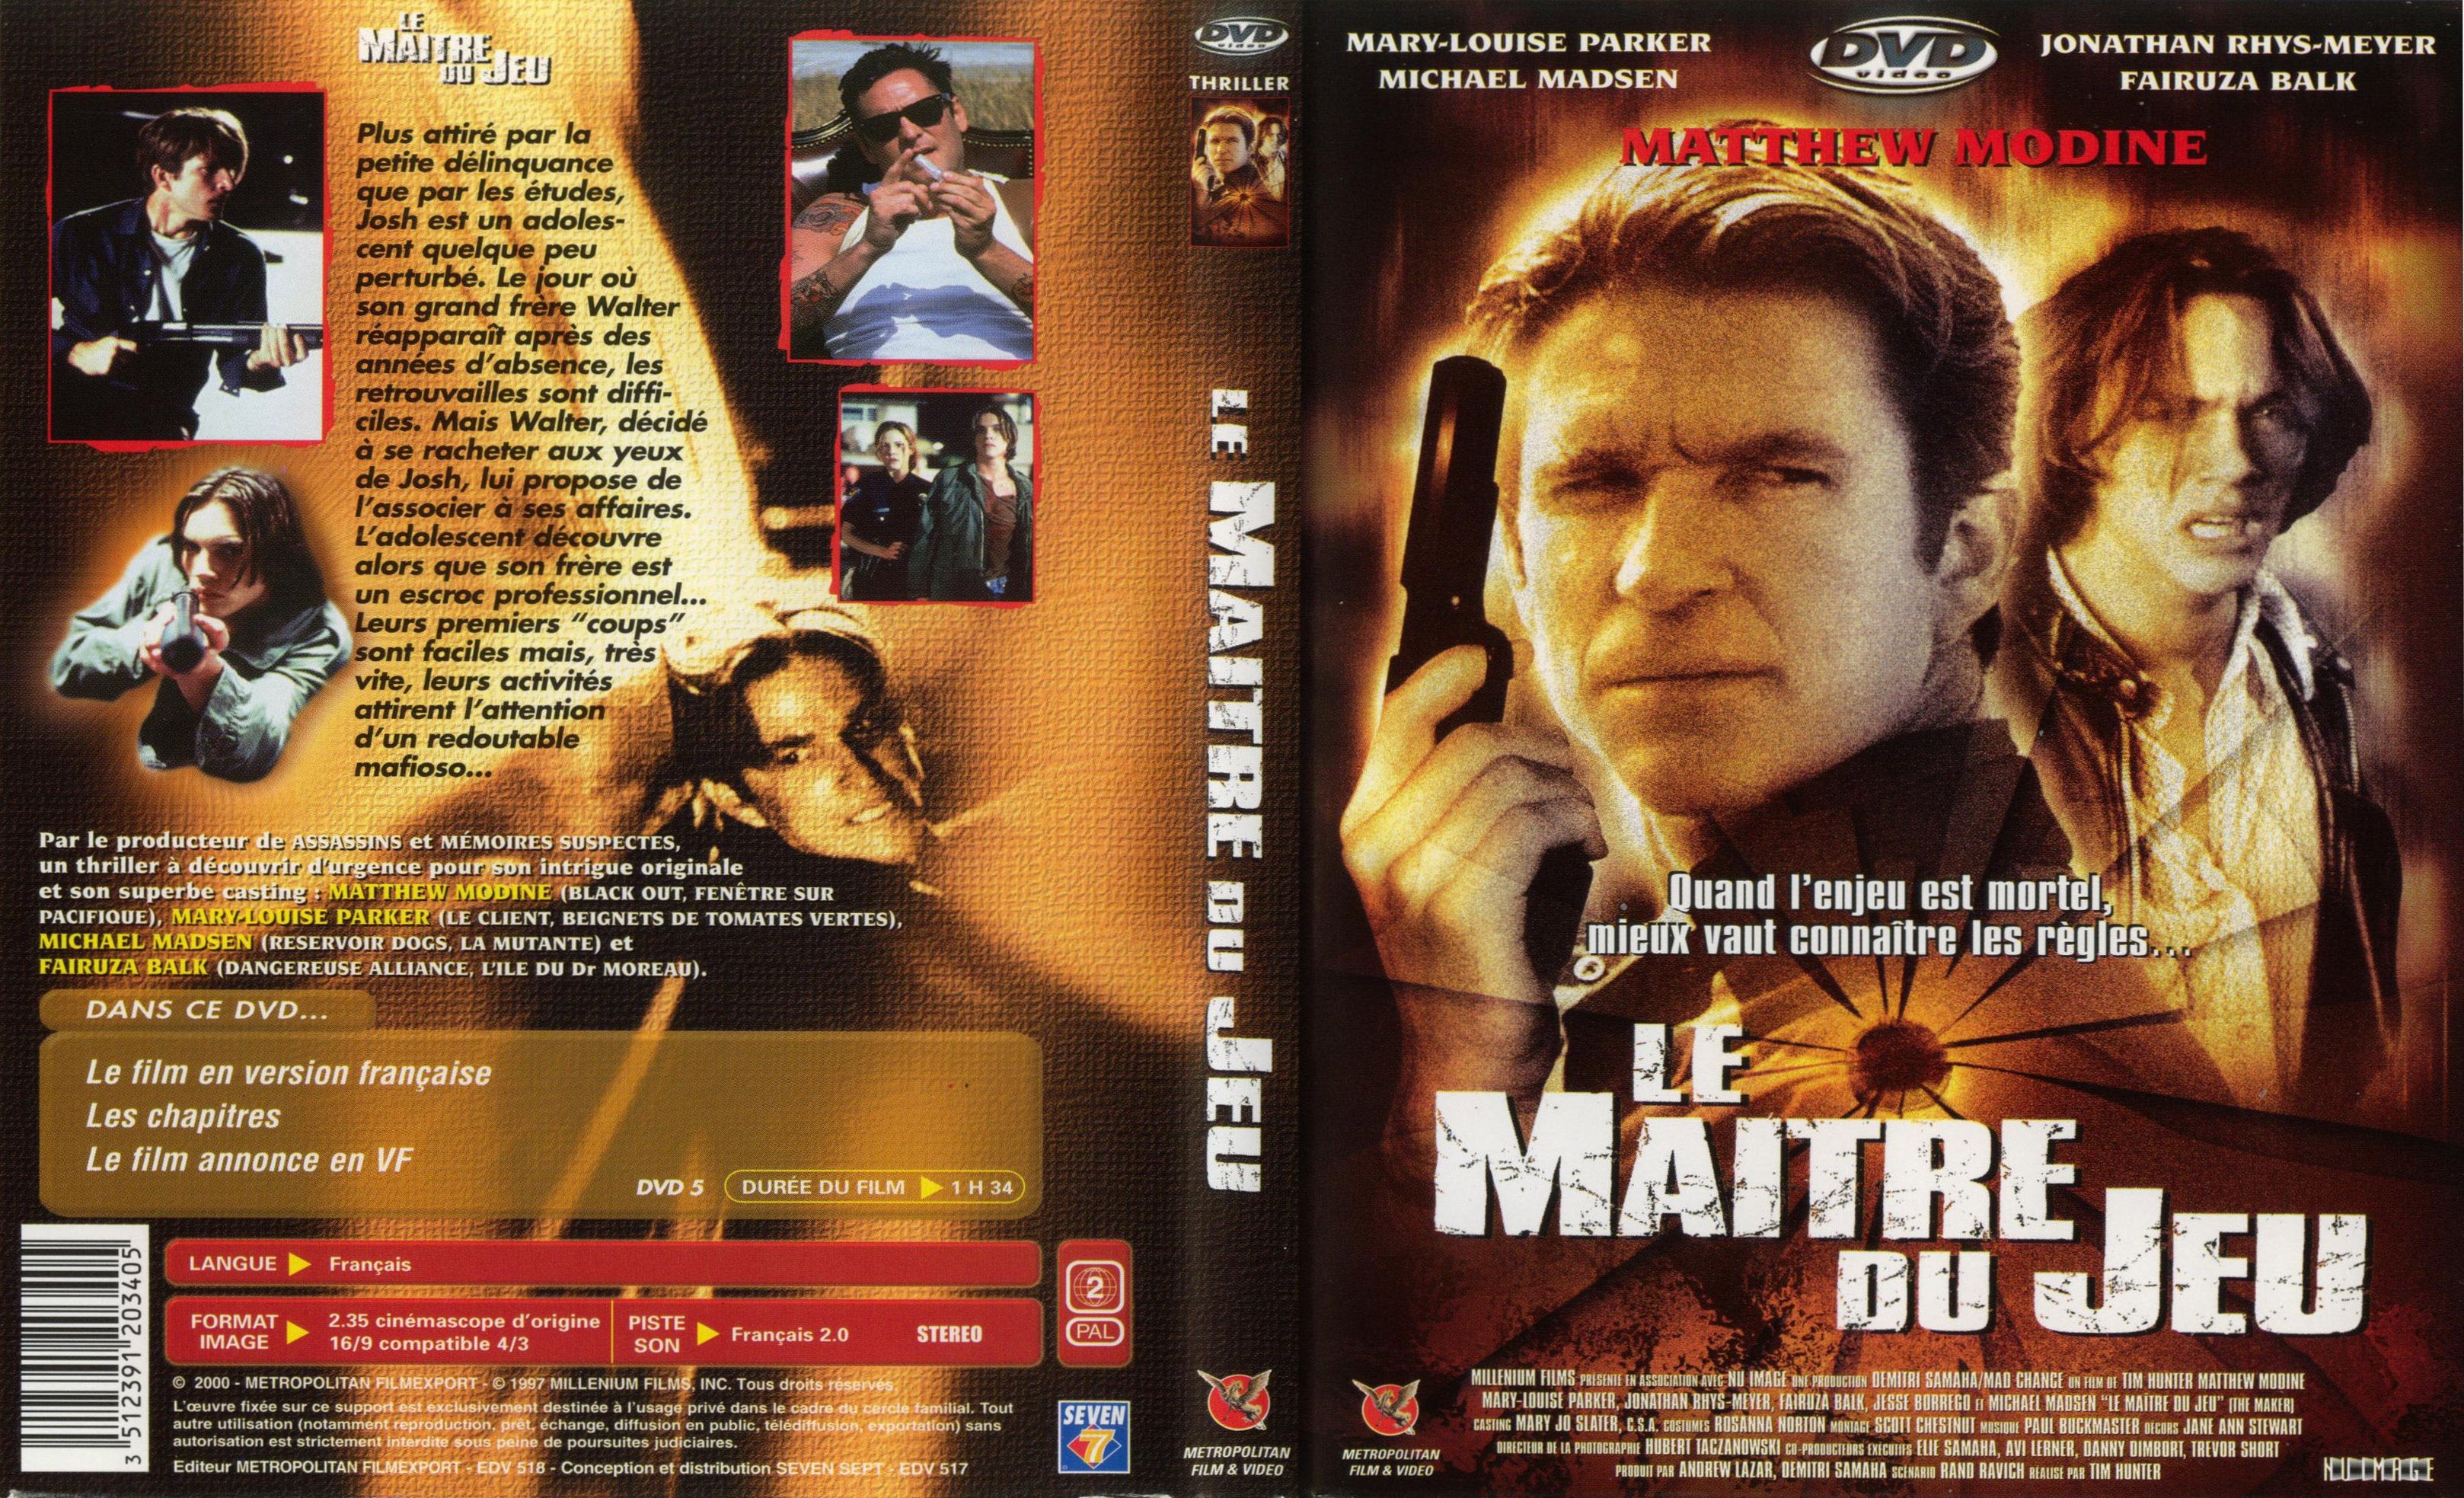 Jaquette DVD Le maitre du jeu (Matthew Modine)